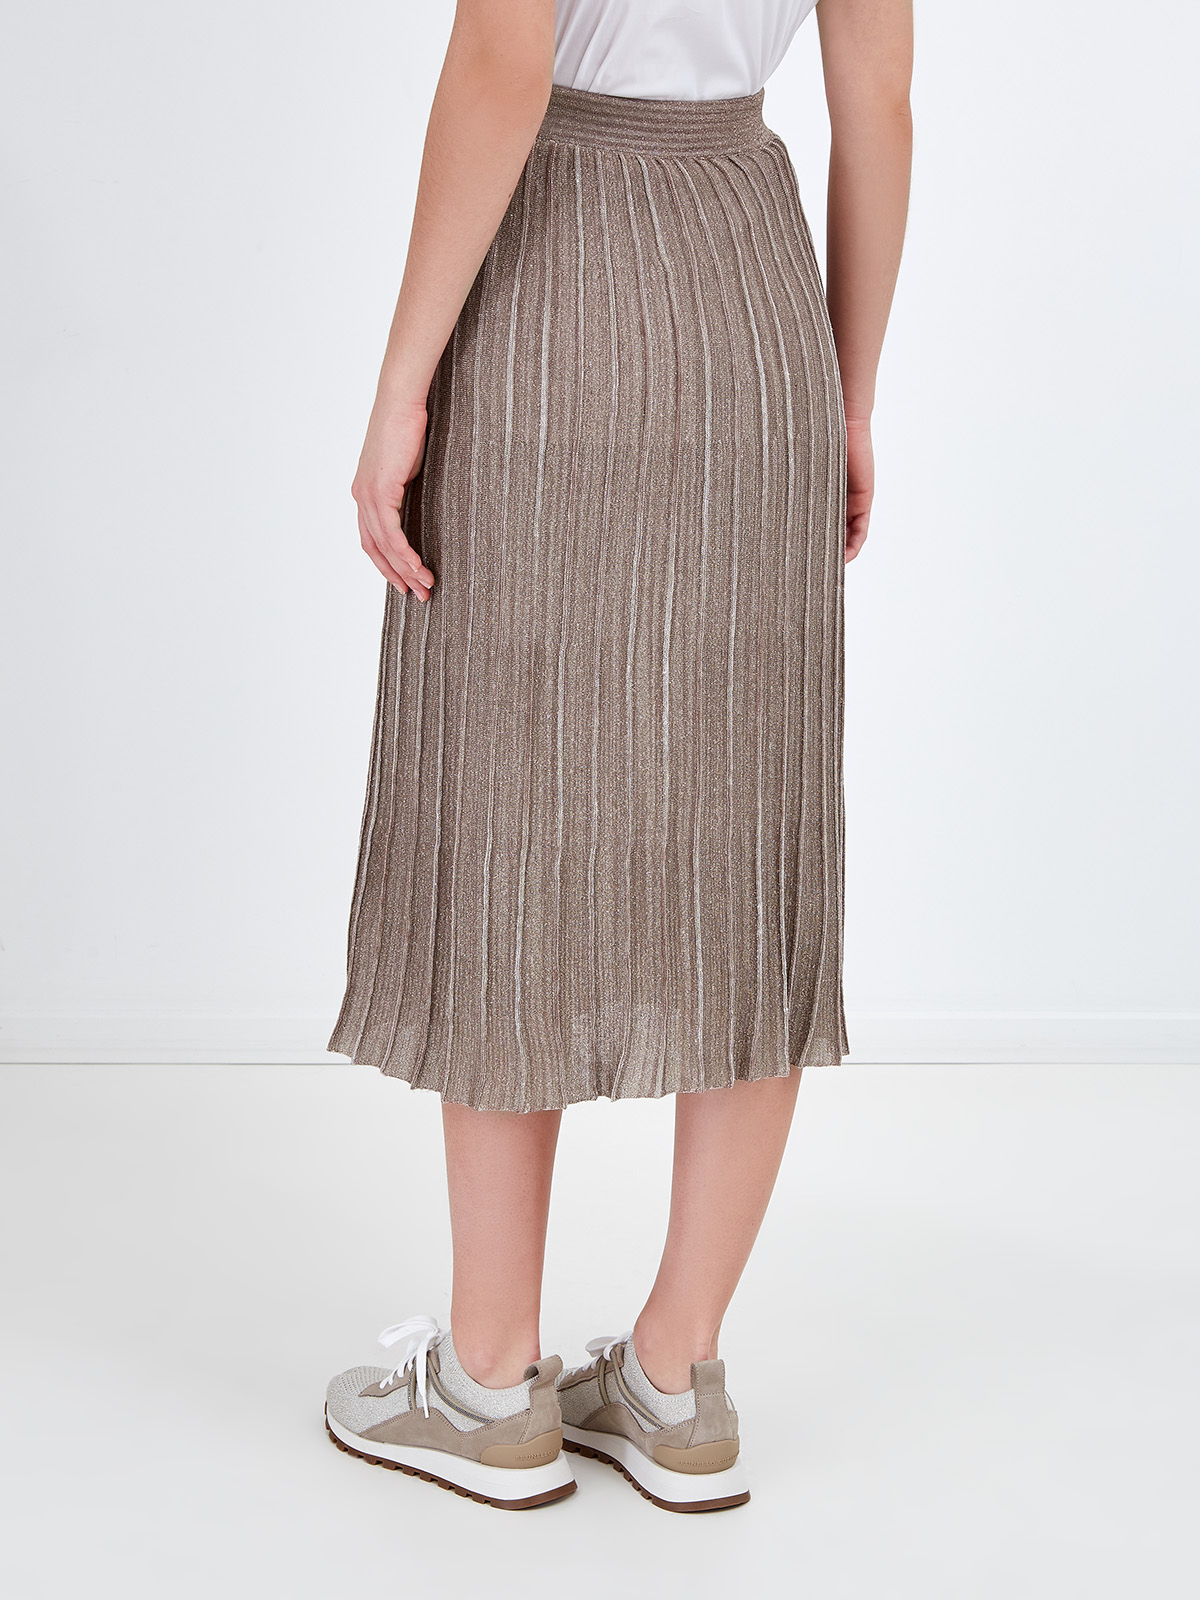 Льняная юбка-плиссе с металлизированной нитью ламе FABIANA FILIPPI, цвет бронзовый, размер 40;42 - фото 4